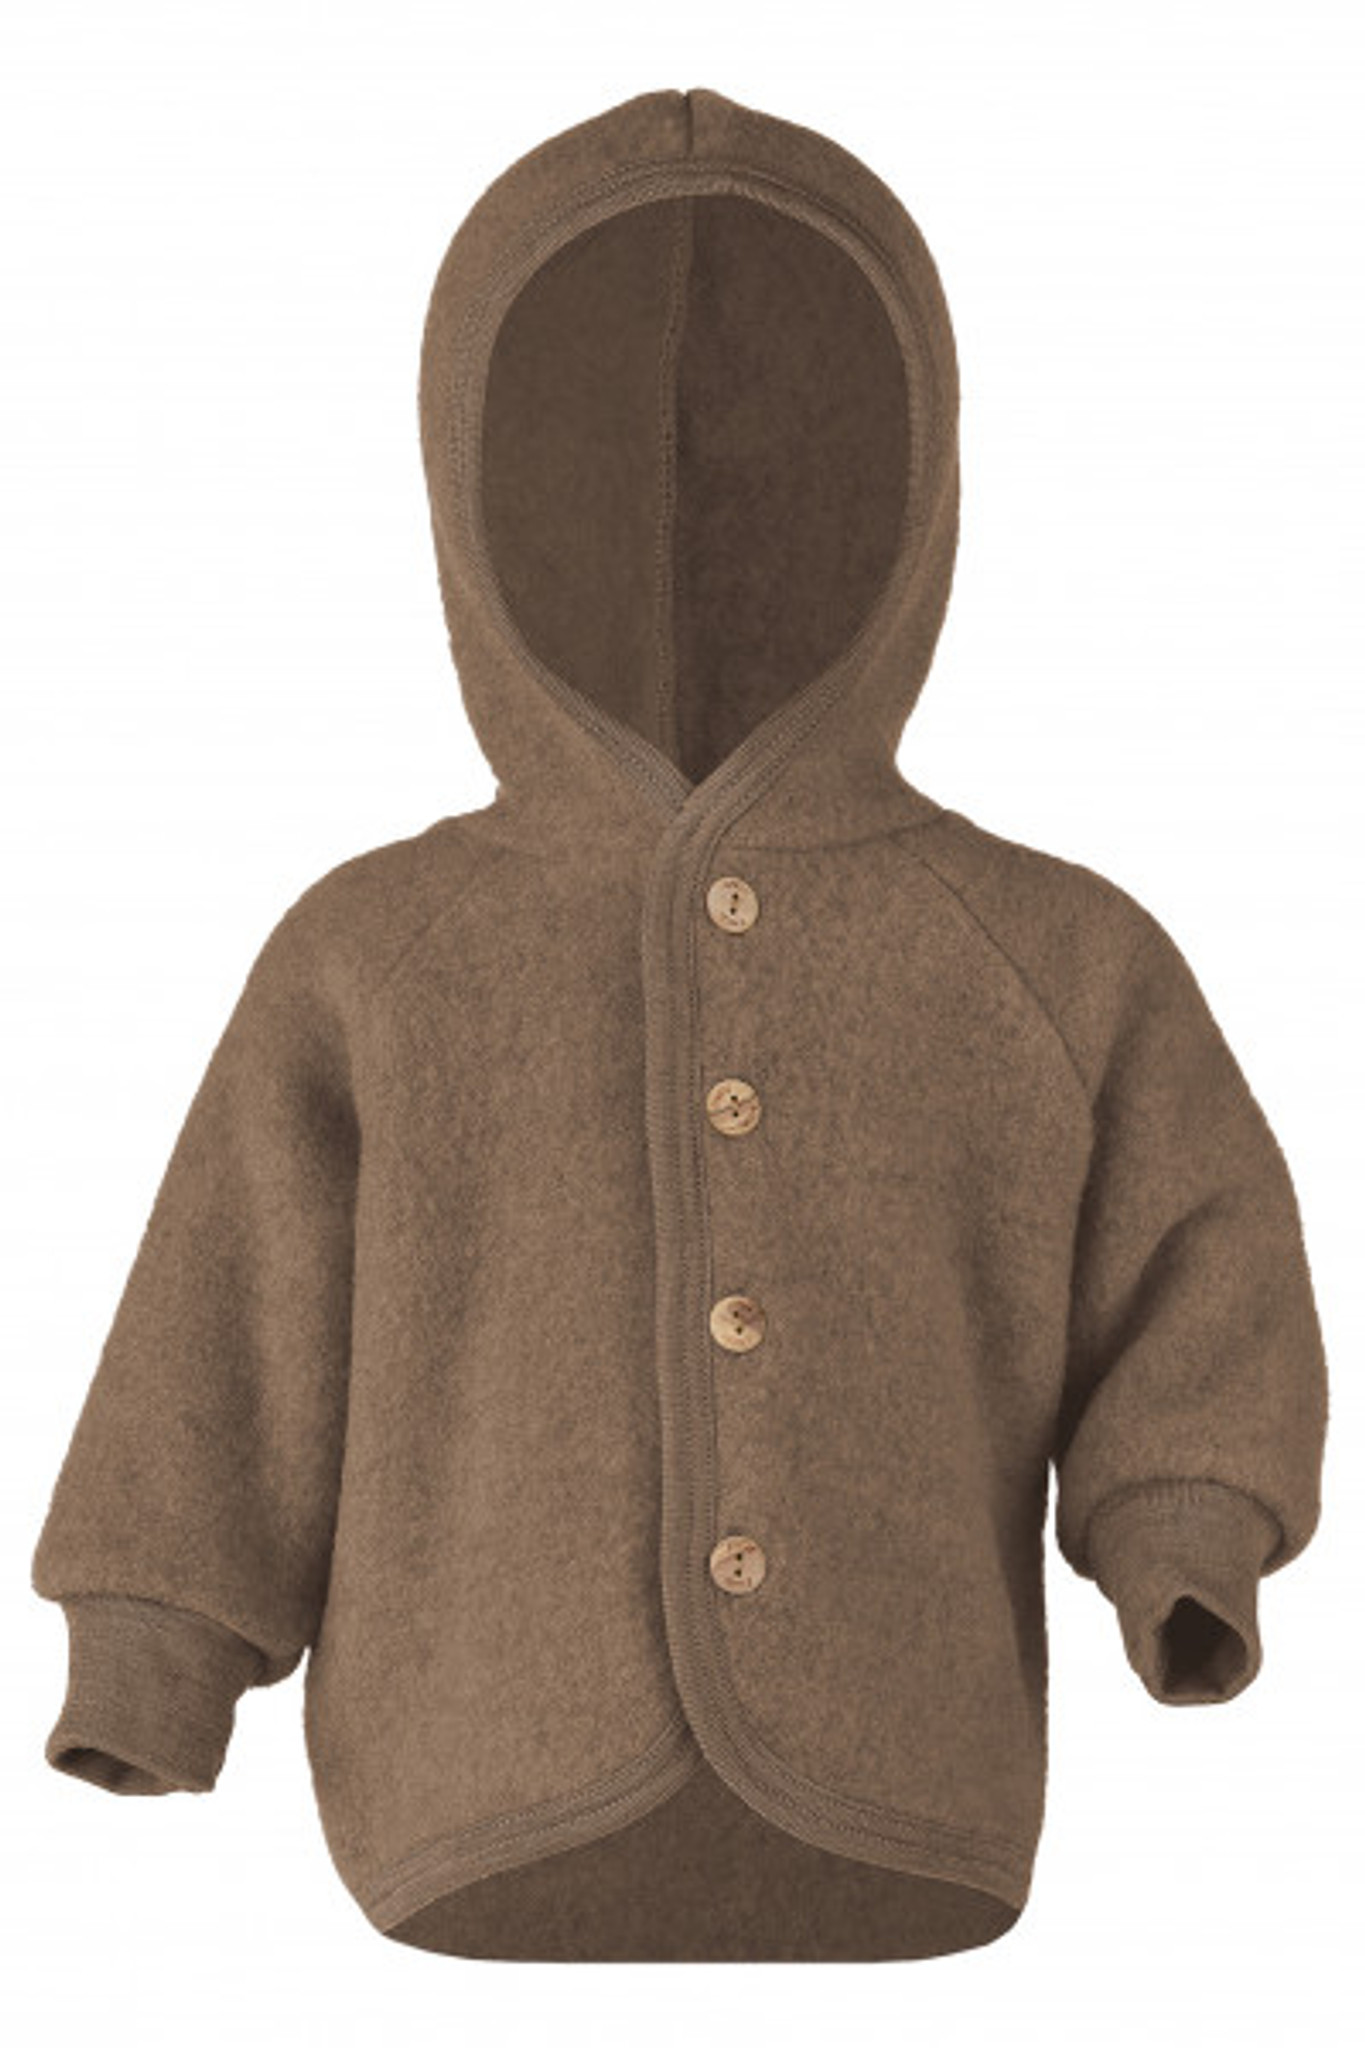 Engel Wool Fleece Hooded Jacket with Wooden Buttons - Walnut Melange